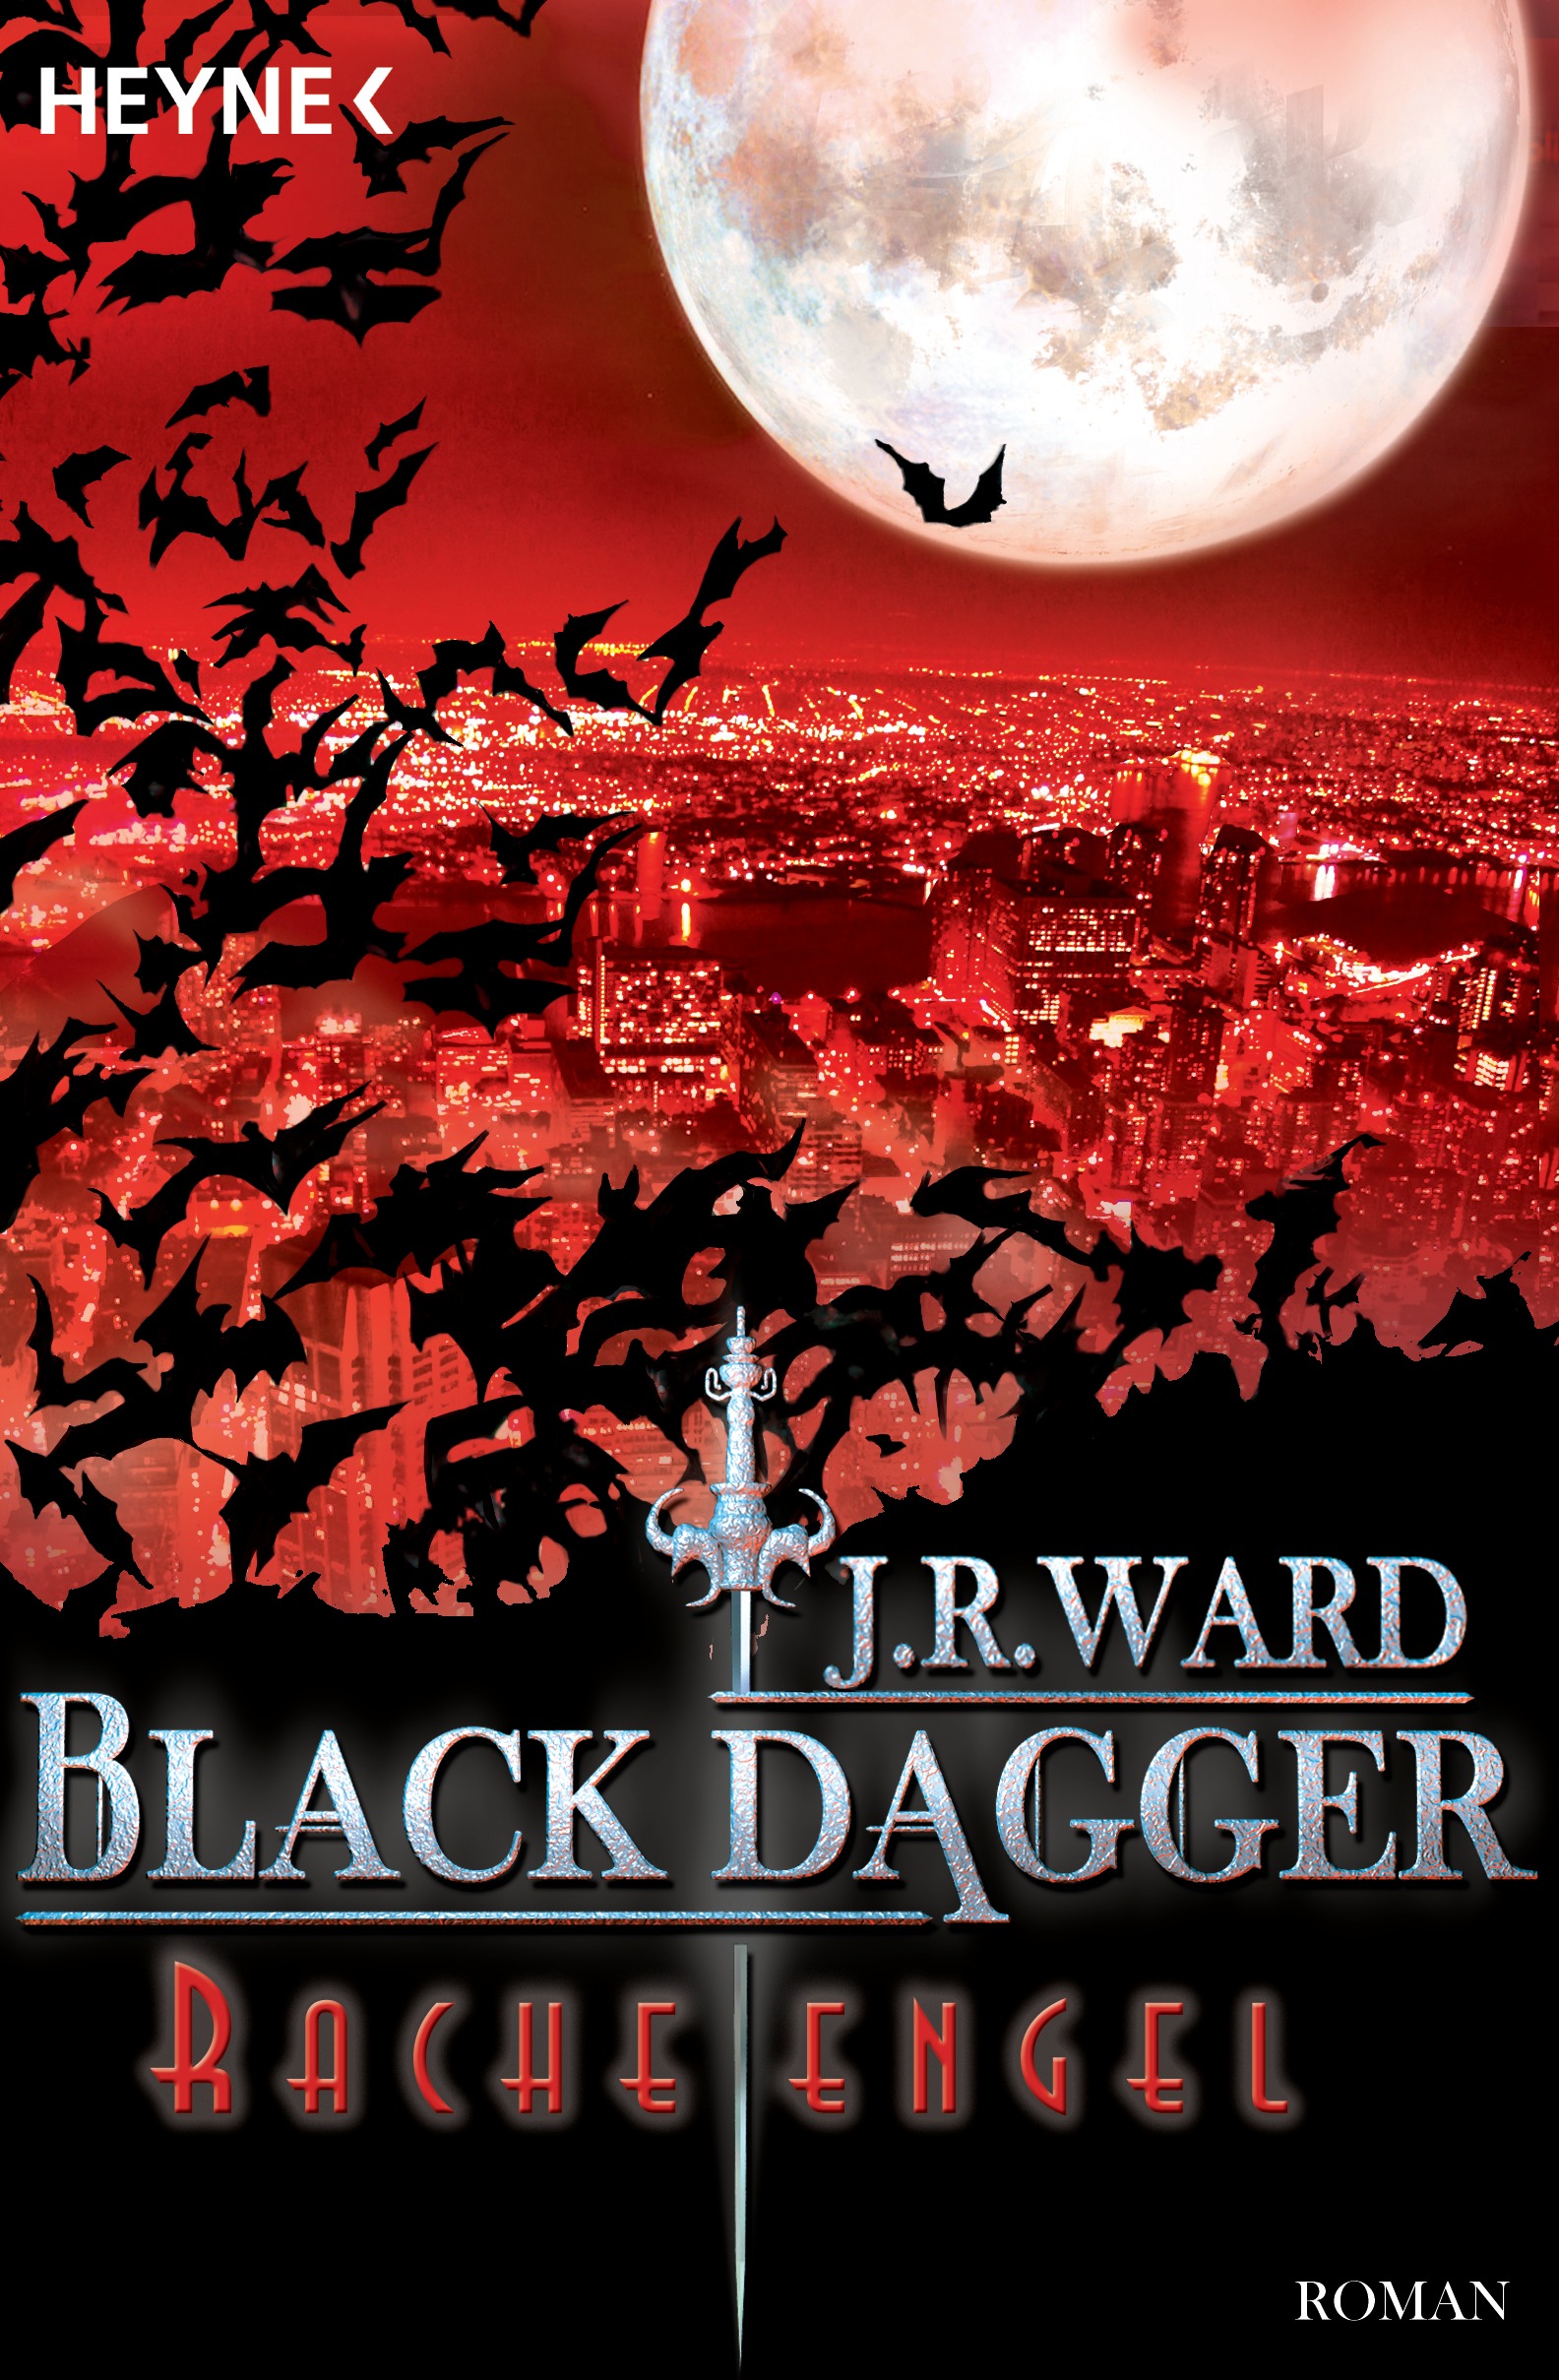 Black Dagger (13) Racheengel